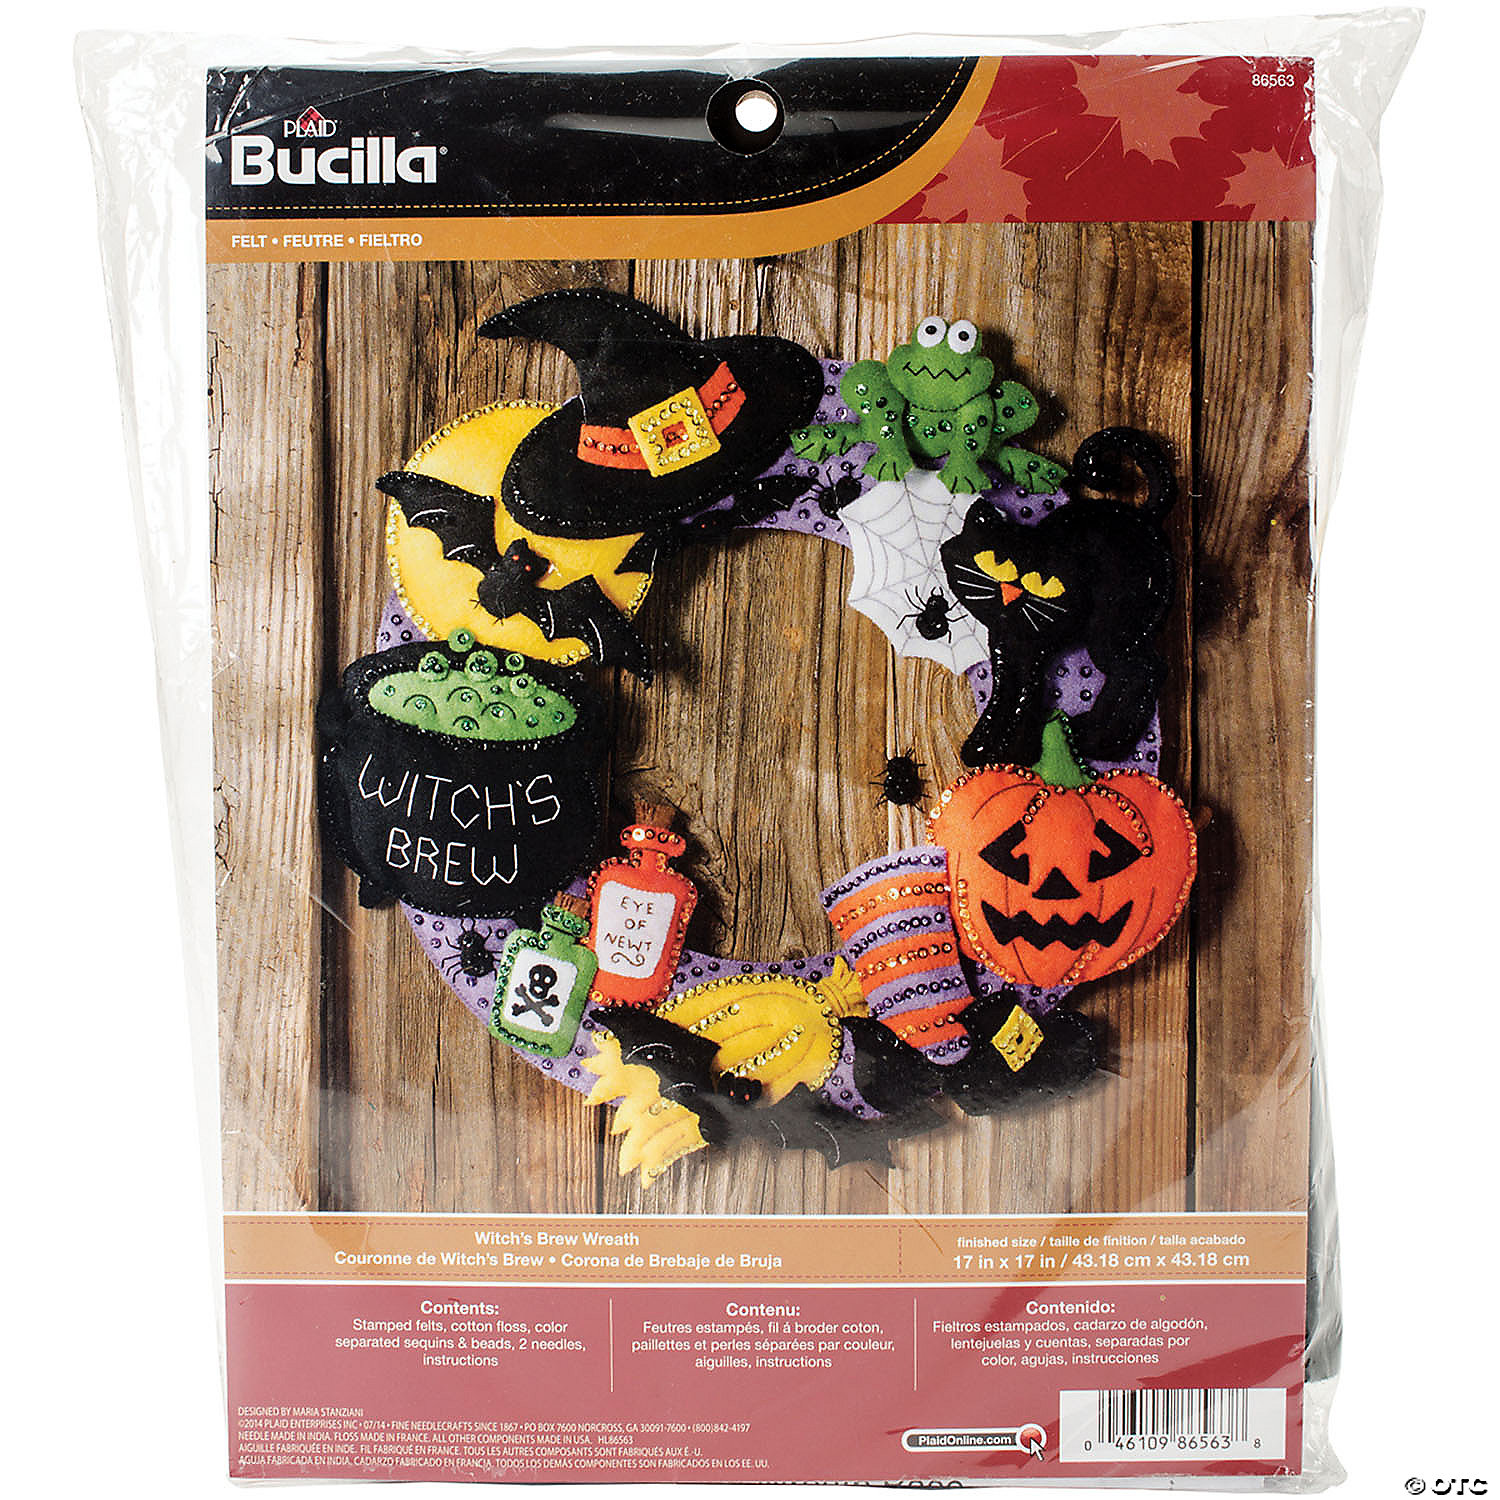 Bucilla Felt Applique Ornaments Kit Set Of 4, Halloween Squad